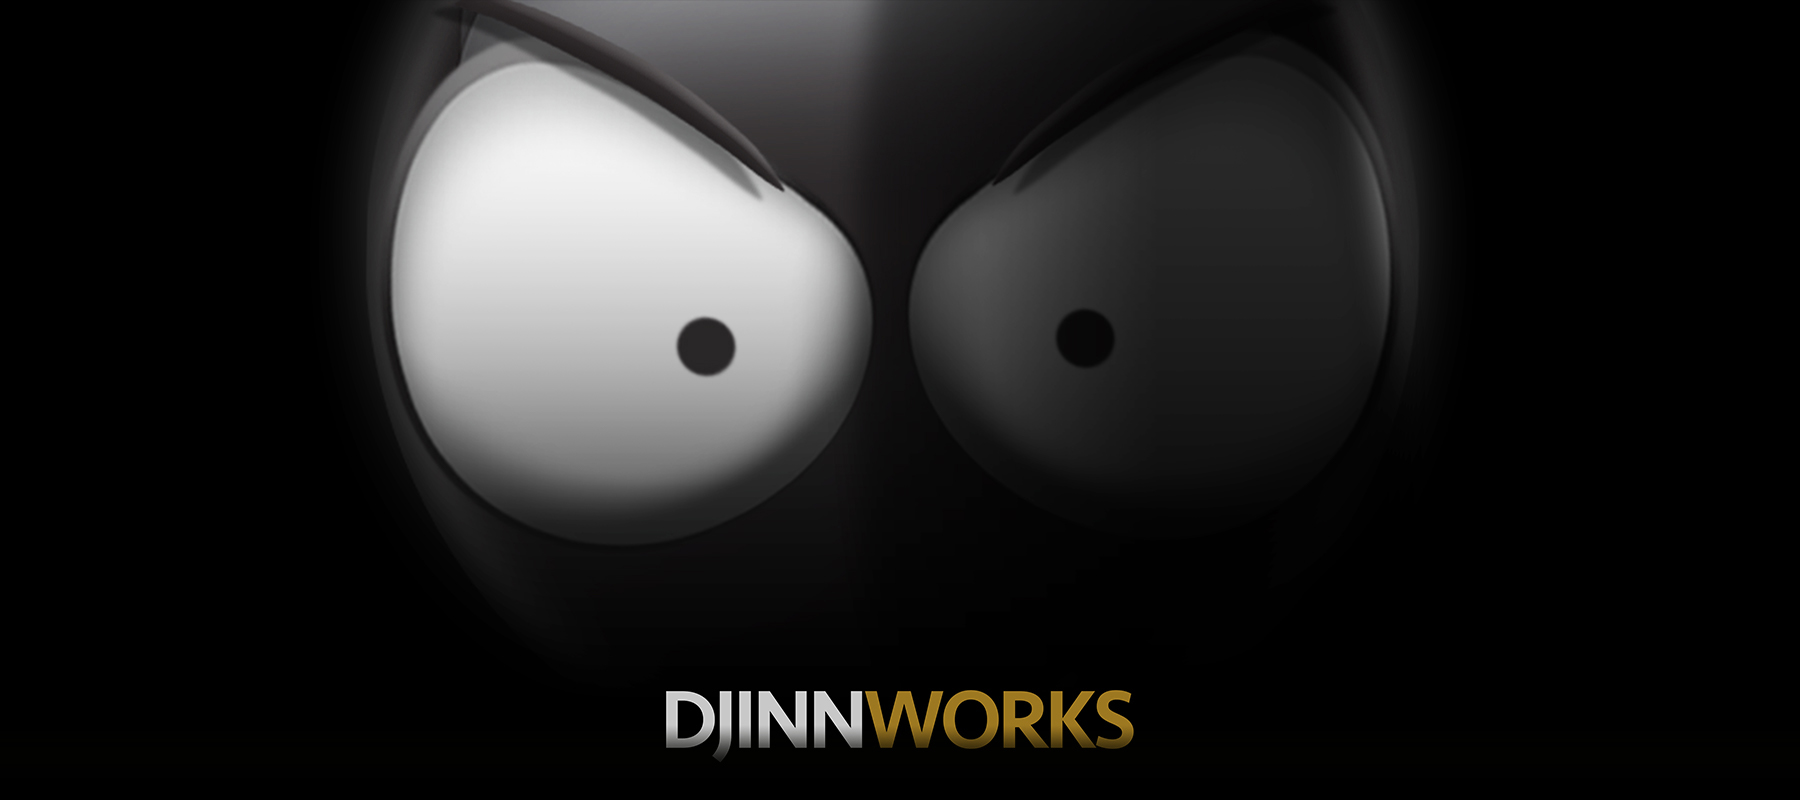 Djinnworks